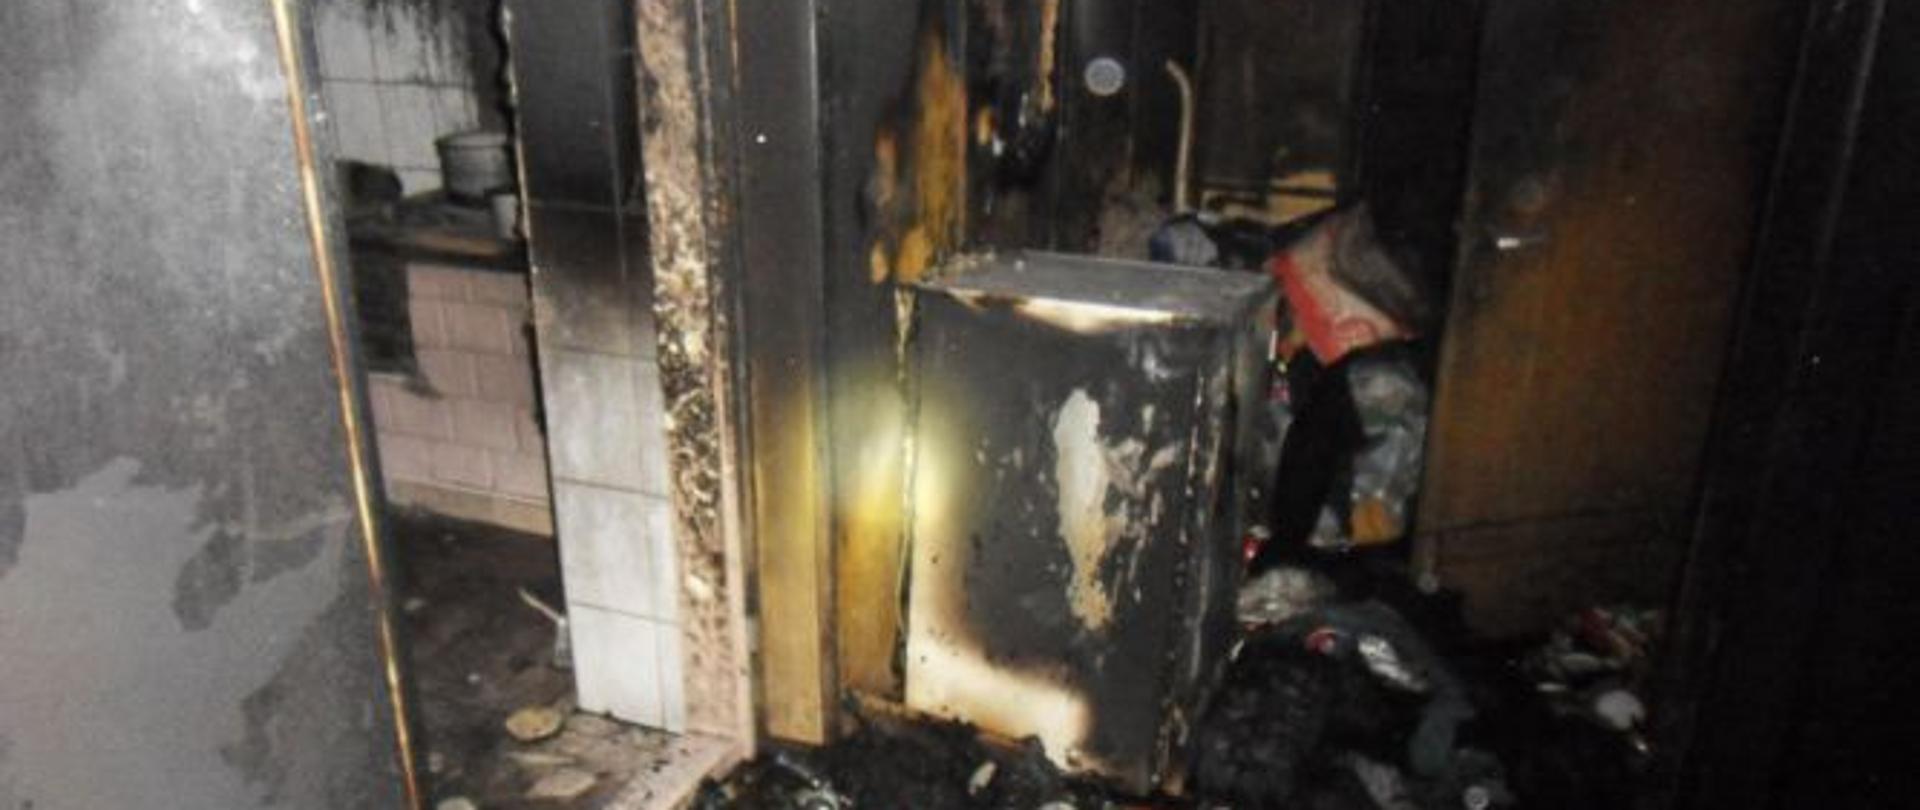 Zdjęcie przedstawia spalone pomieszczenie budynku mieszkalnego. W tle widoczny sprzęt AGD, pomieszczenie kuchenne oraz duża ilość materiału palnego zgromadzona w pomieszczeniu.